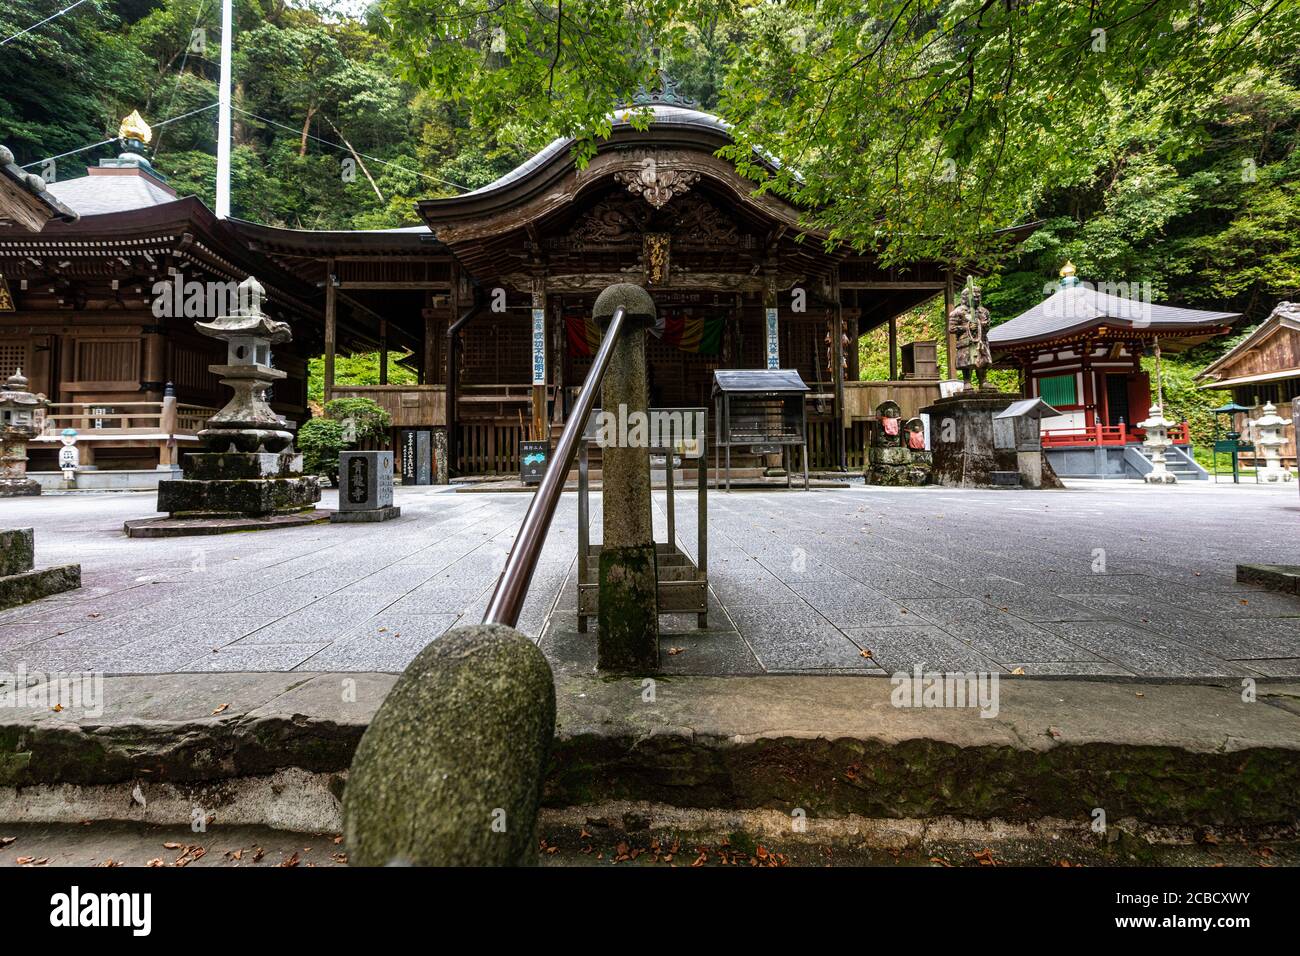 Shoruji est le temple n° 36 sur le pèlerinage de Shikoku, situé sur une péninsule qui jante dans l'océan Pacifique. Les pèlerins avaient l'habitude d'atteindre le temple b Banque D'Images